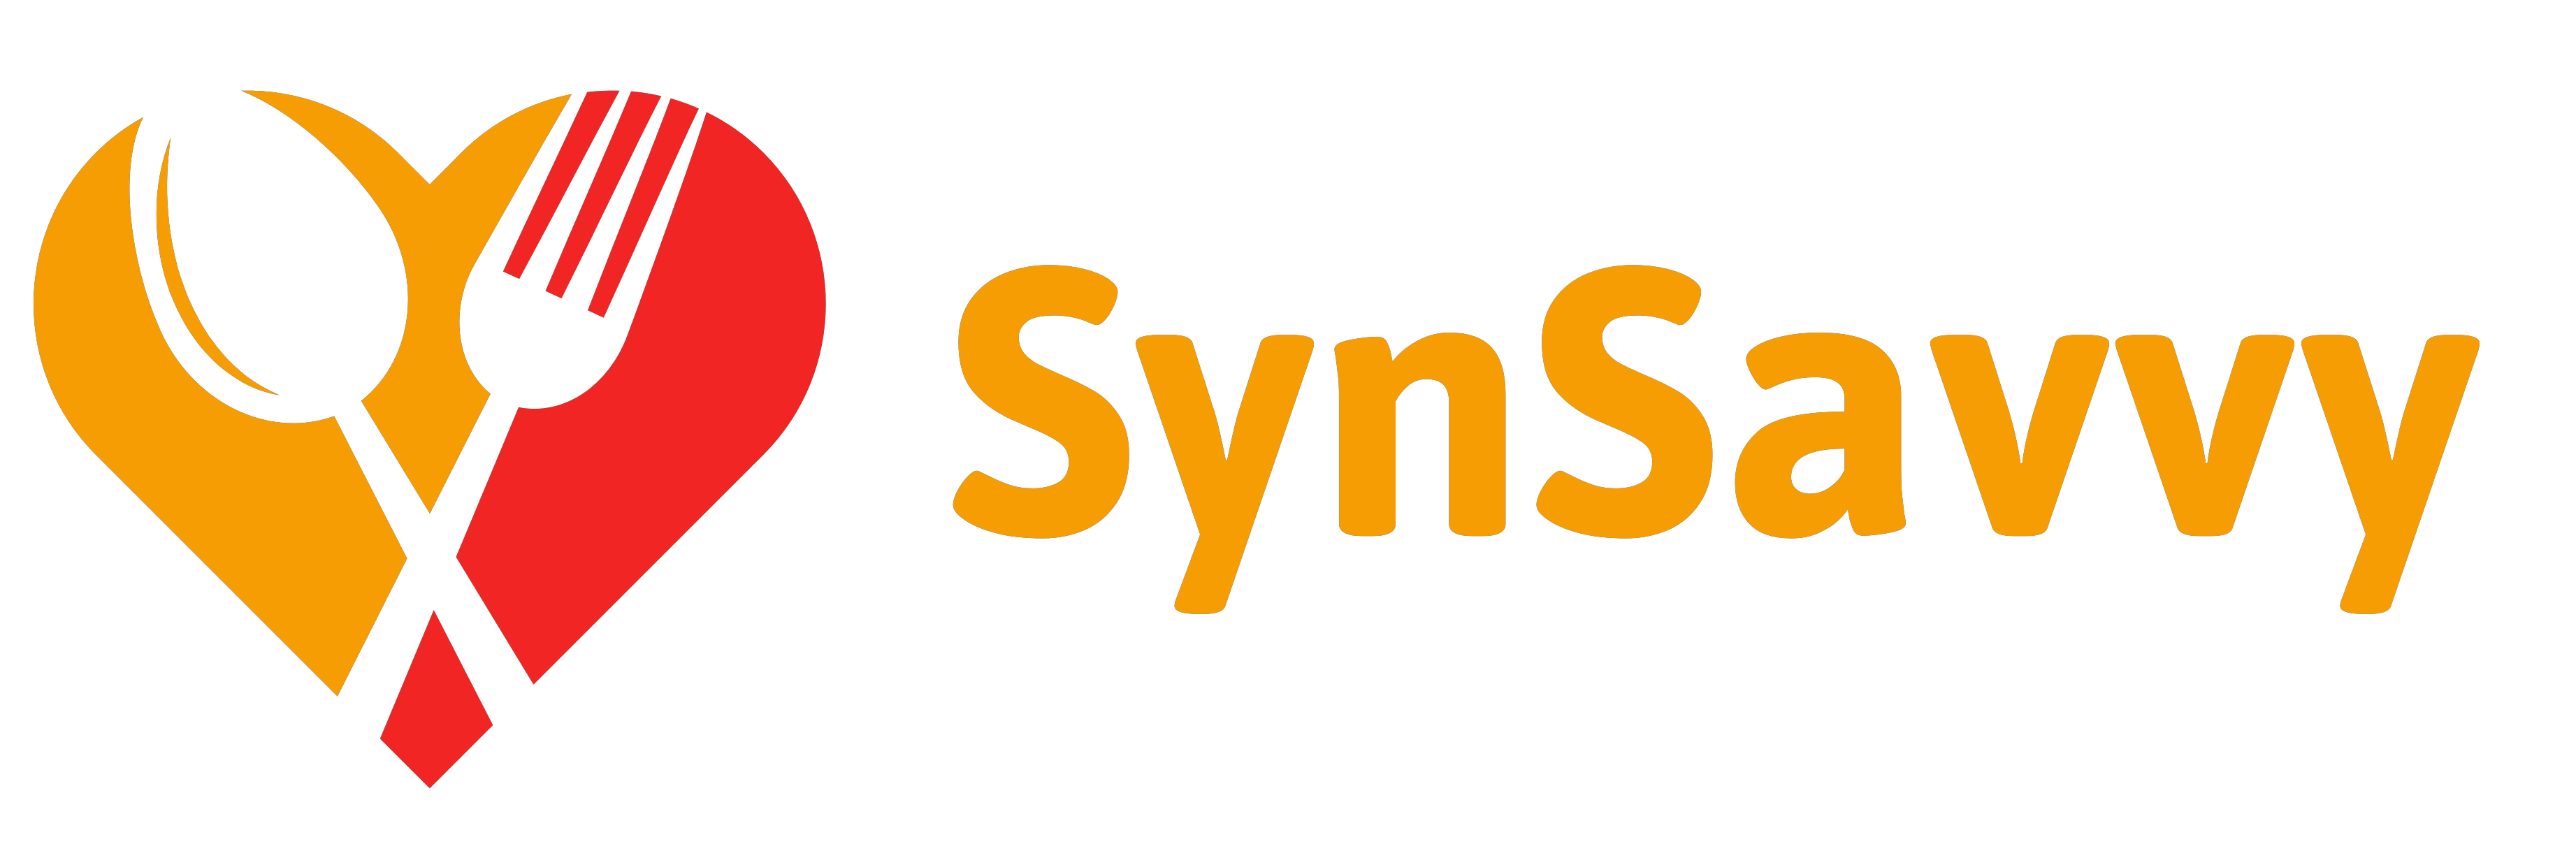 SynSavvy Logo